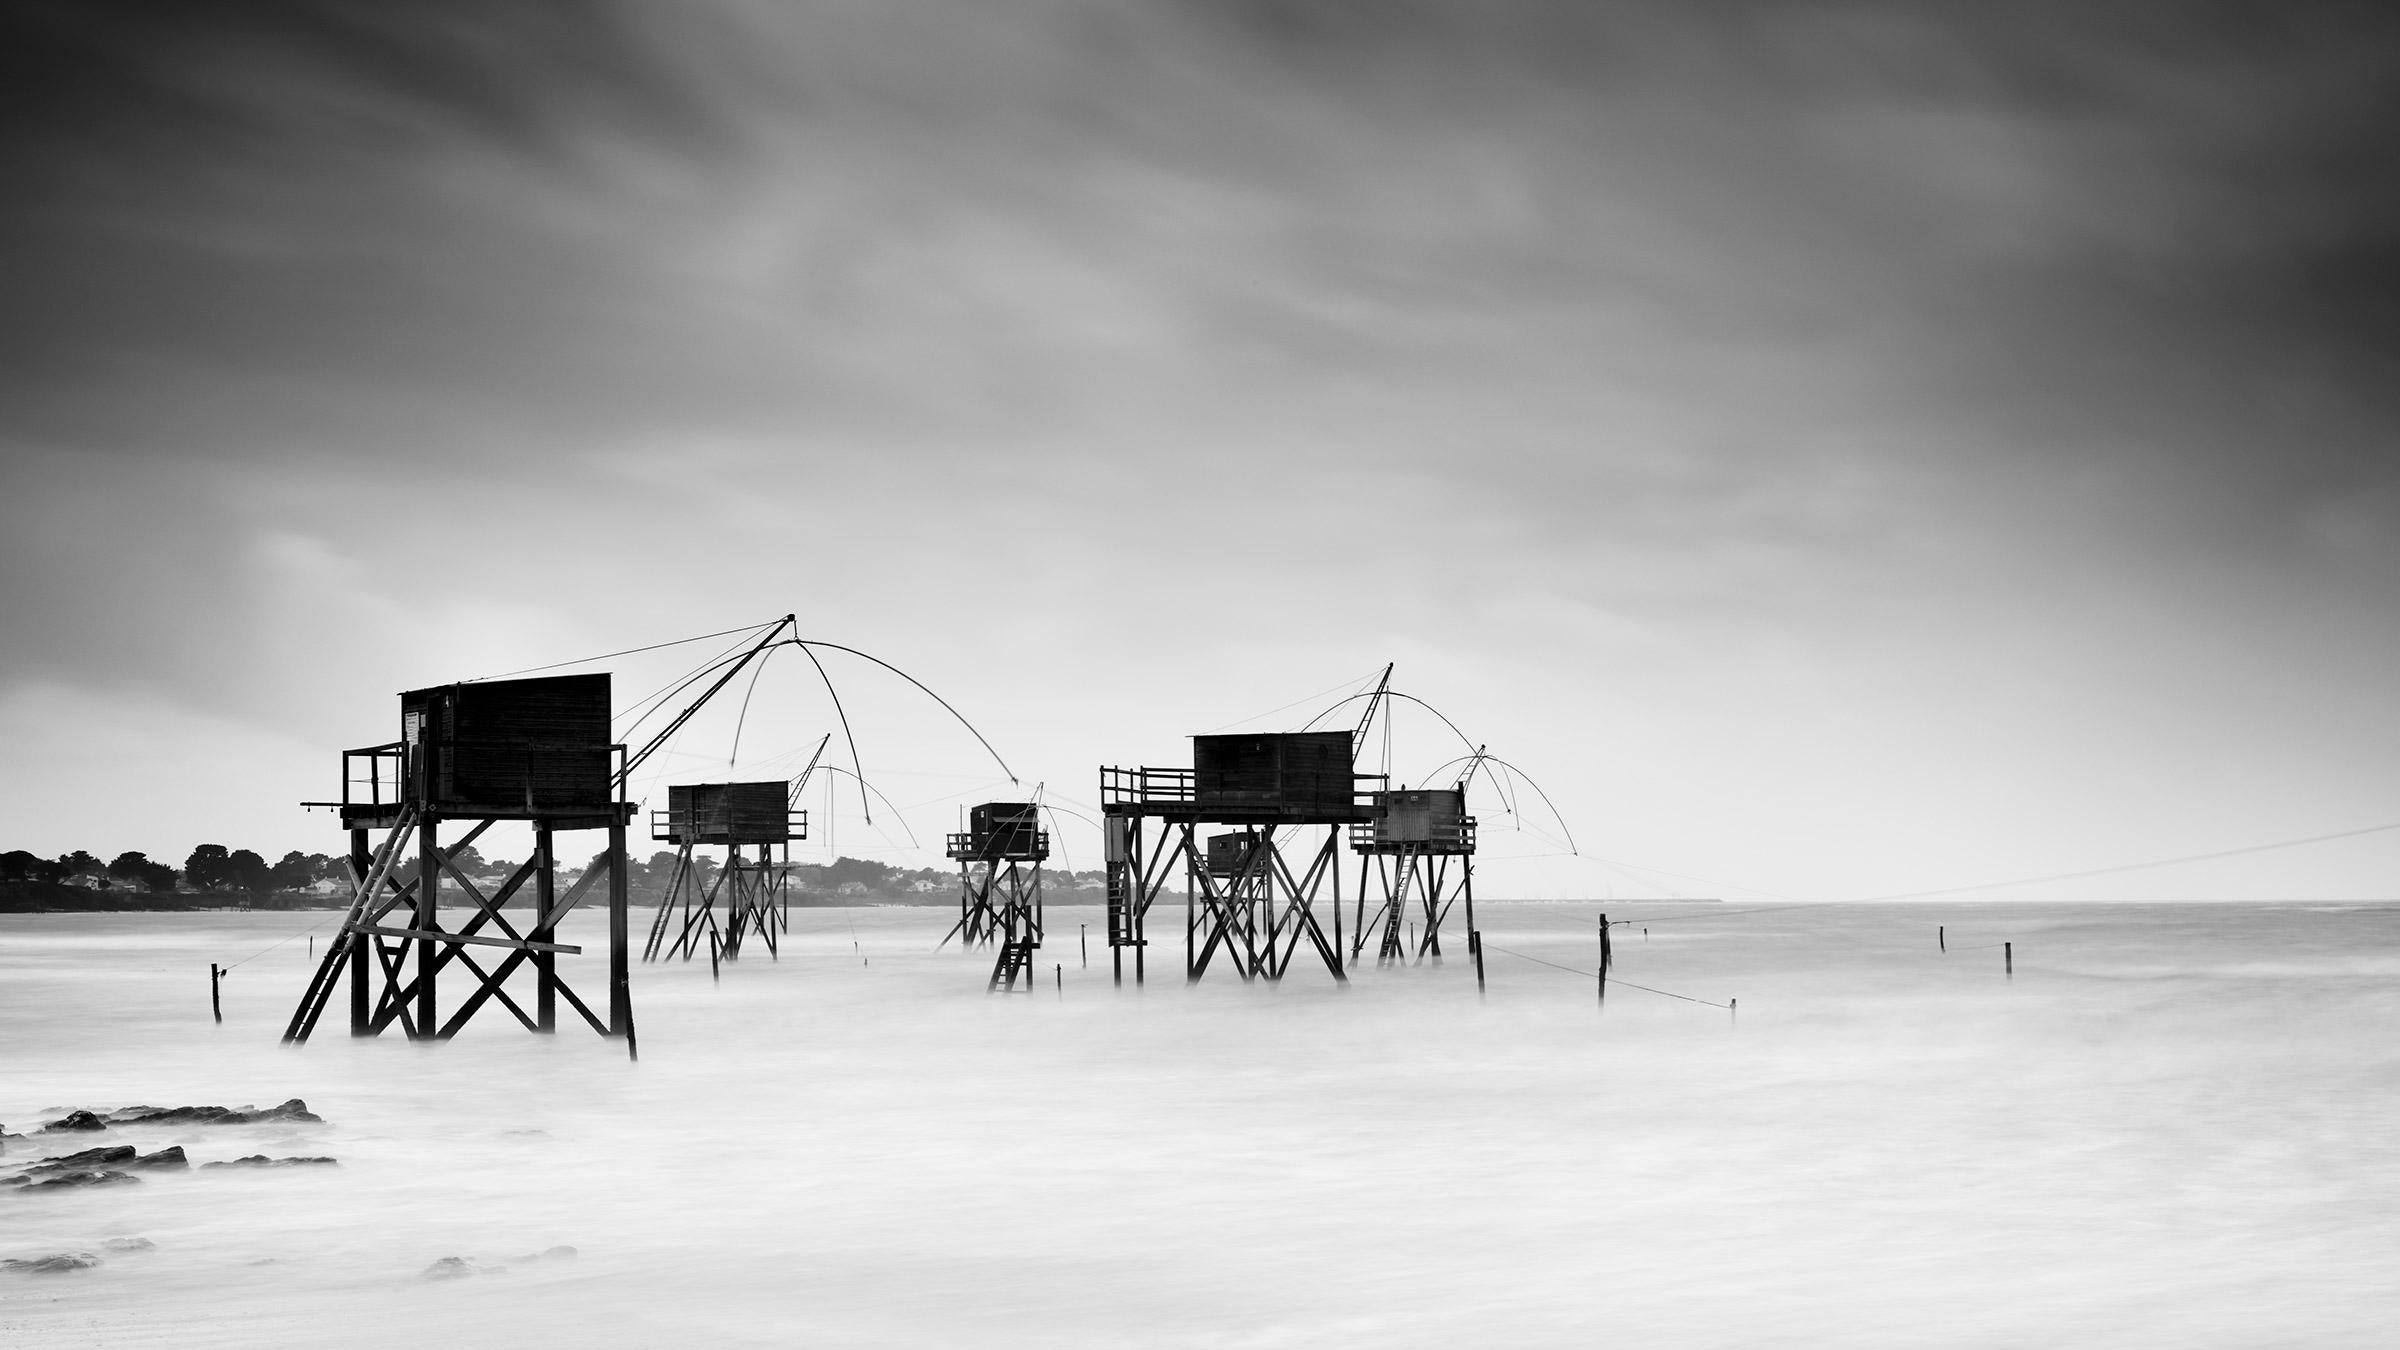 Black and White Photograph Gerald Berghammer - Panorama de la cabane de pêche sur pilotis, photographie d'art de paysage en noir et blanc 